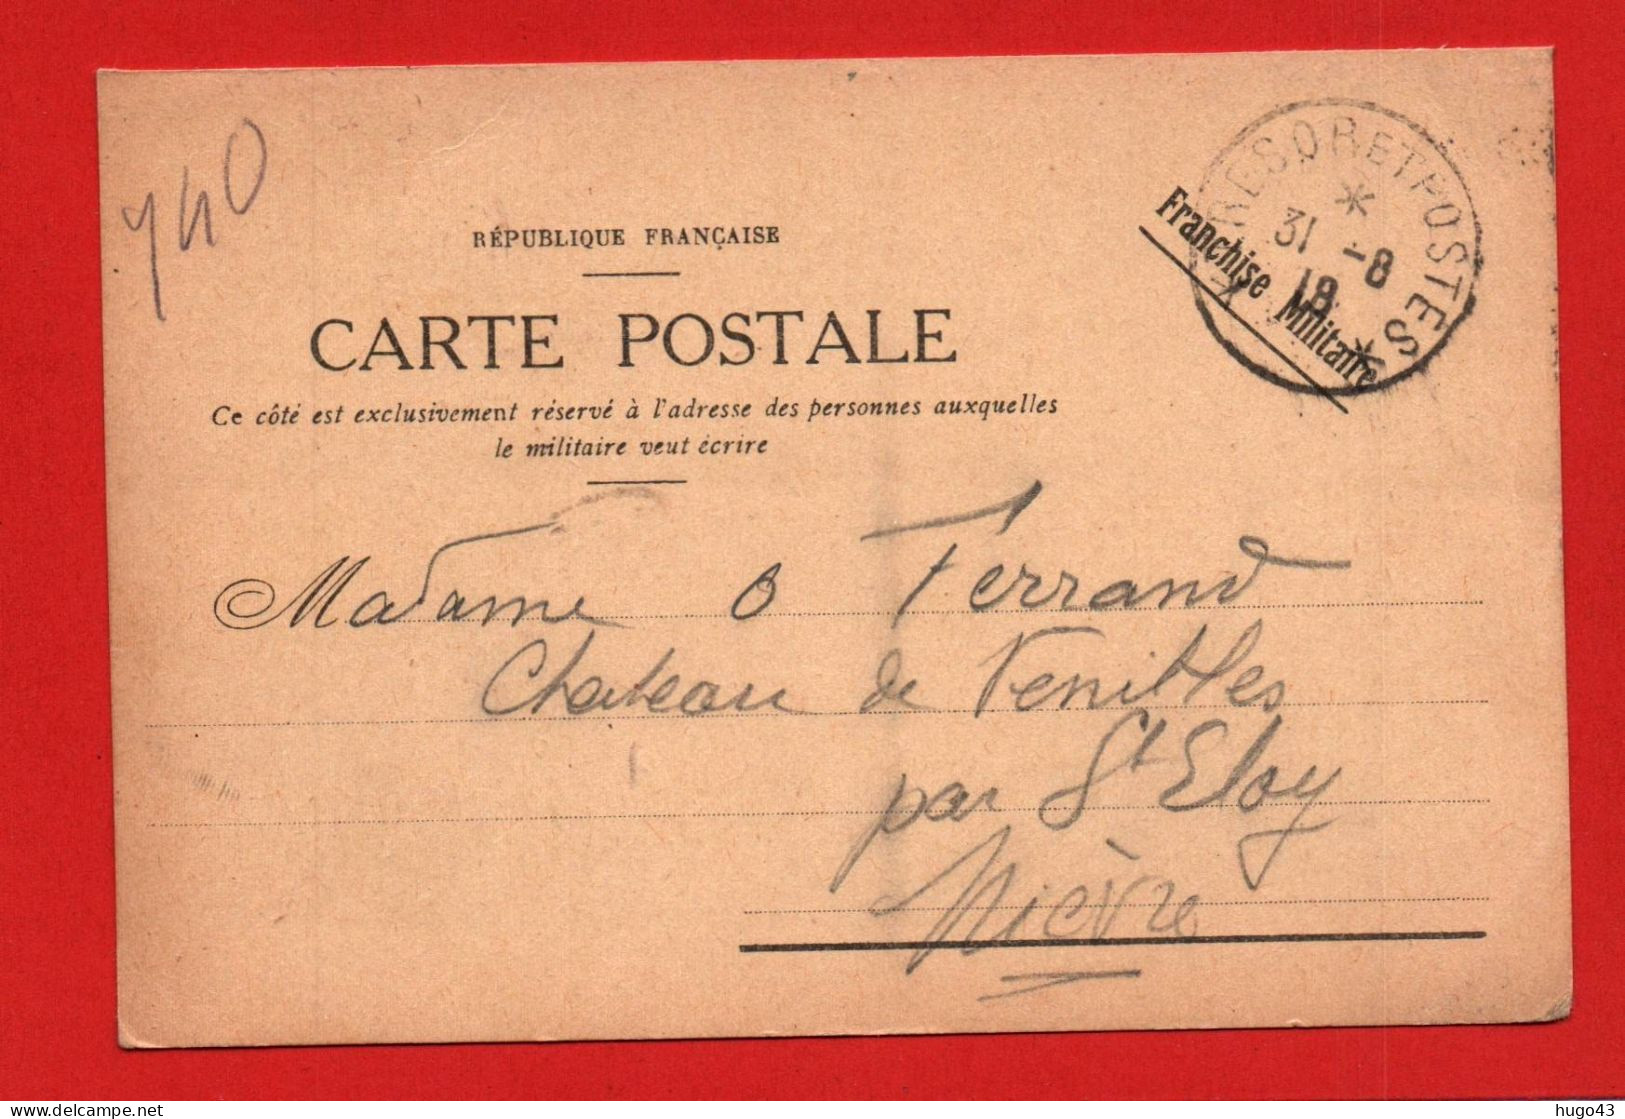 CARTE POSTALE FRANCHISE MILITAIRE - CACHET TRESOR ET POSTES LE 31 /08 /1918 - Seepost